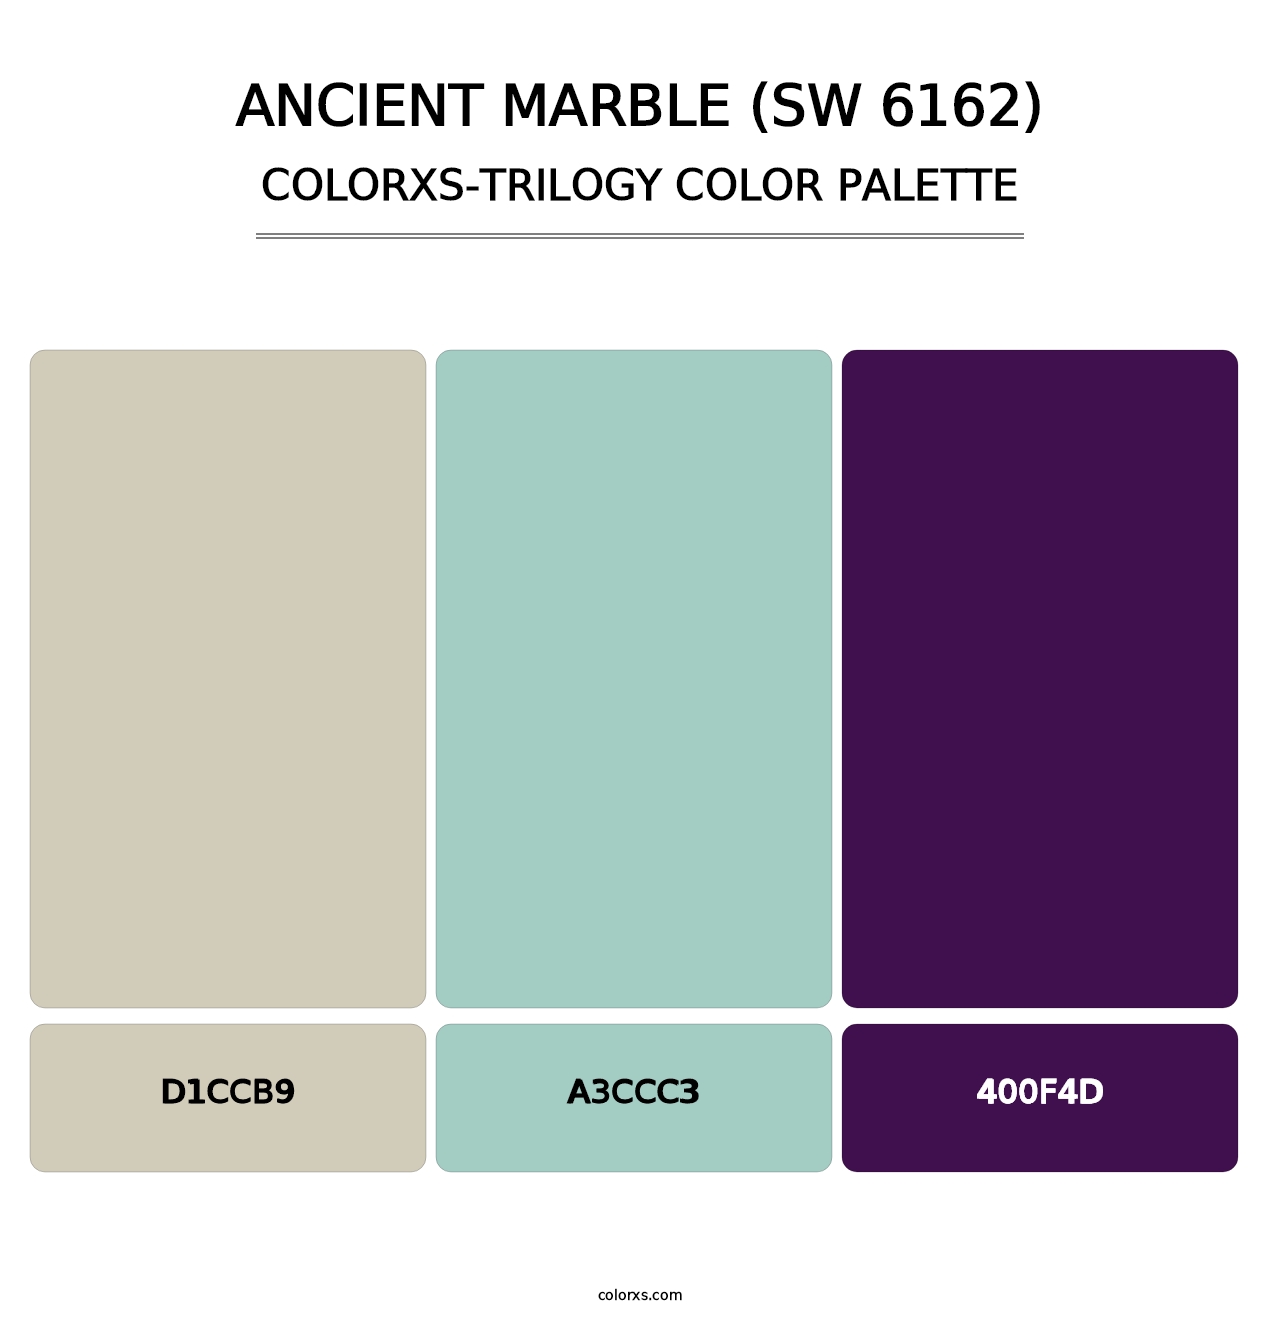 Ancient Marble (SW 6162) - Colorxs Trilogy Palette